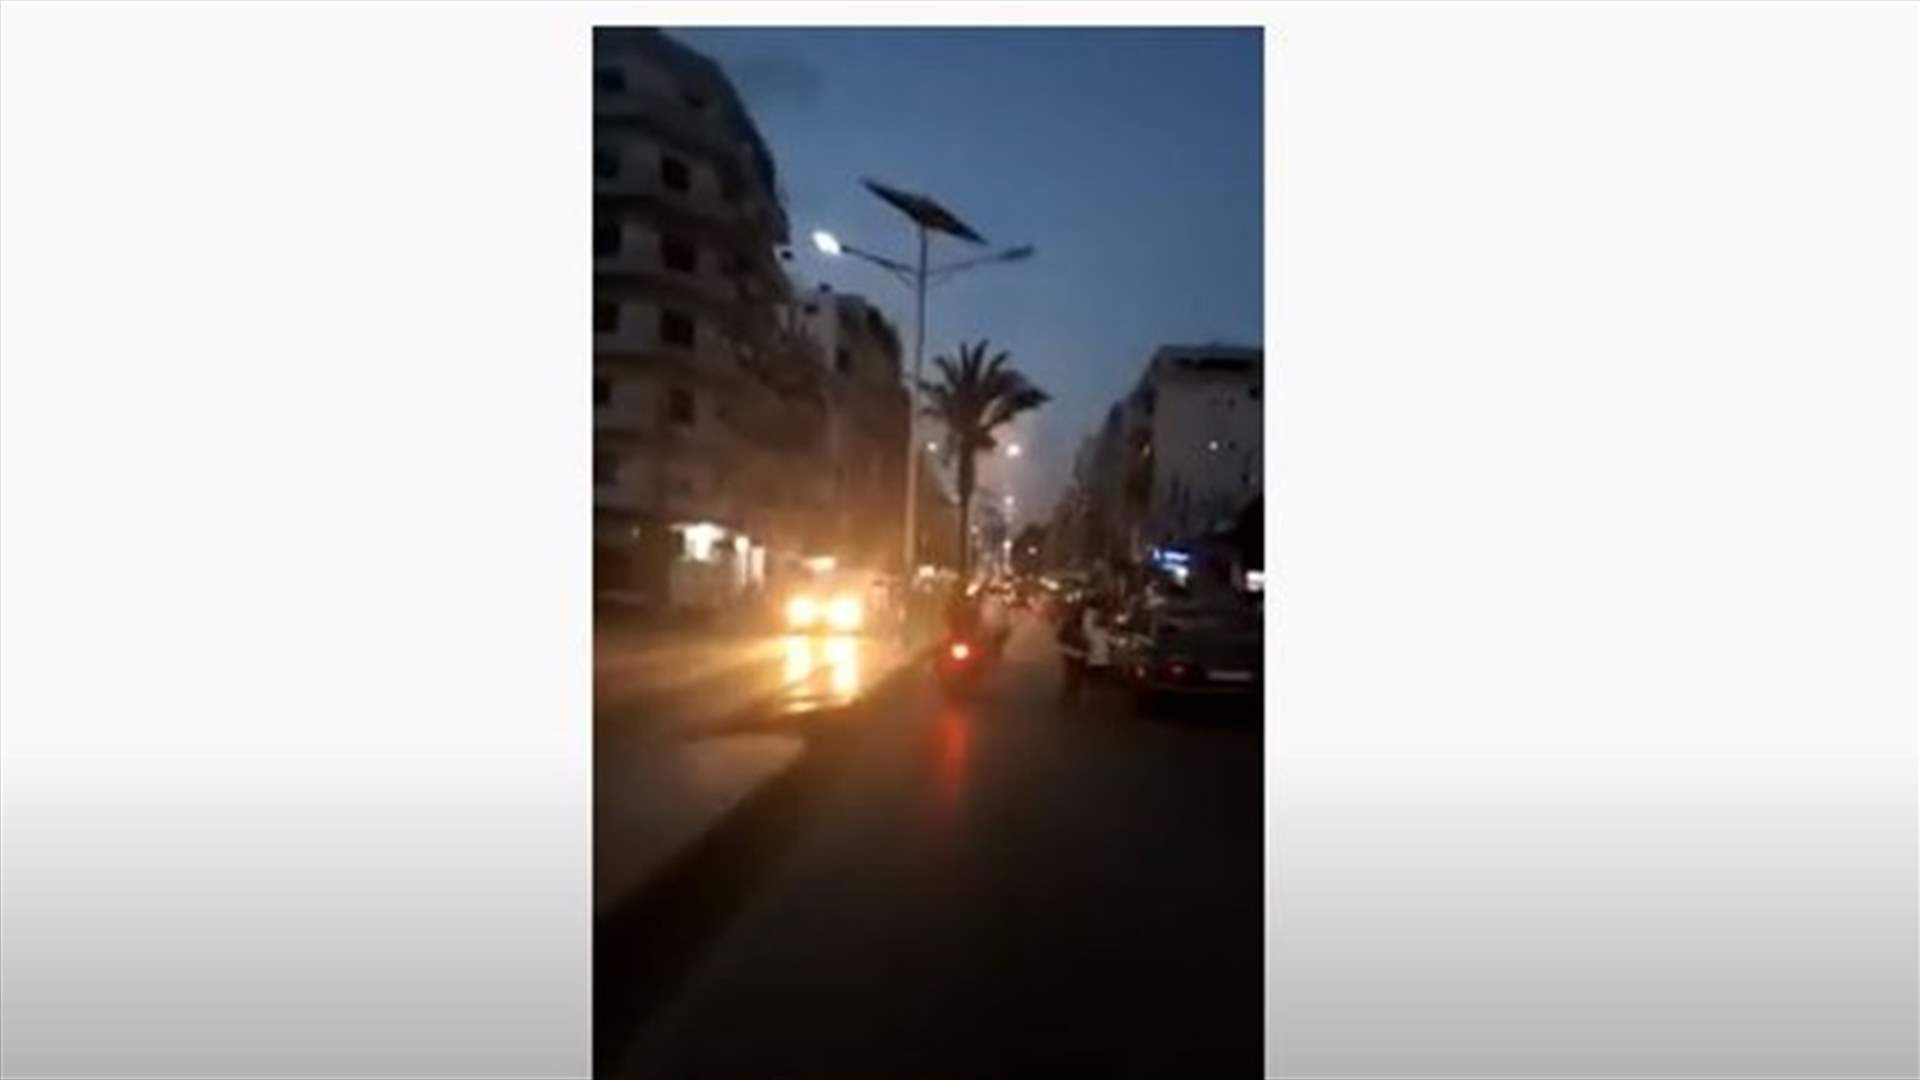 اطلاق نار كثيف في الهواء في طرابلس اثر استقالة الحكومة... وعدد الجرحى وصل إلى 9 (فيديو)